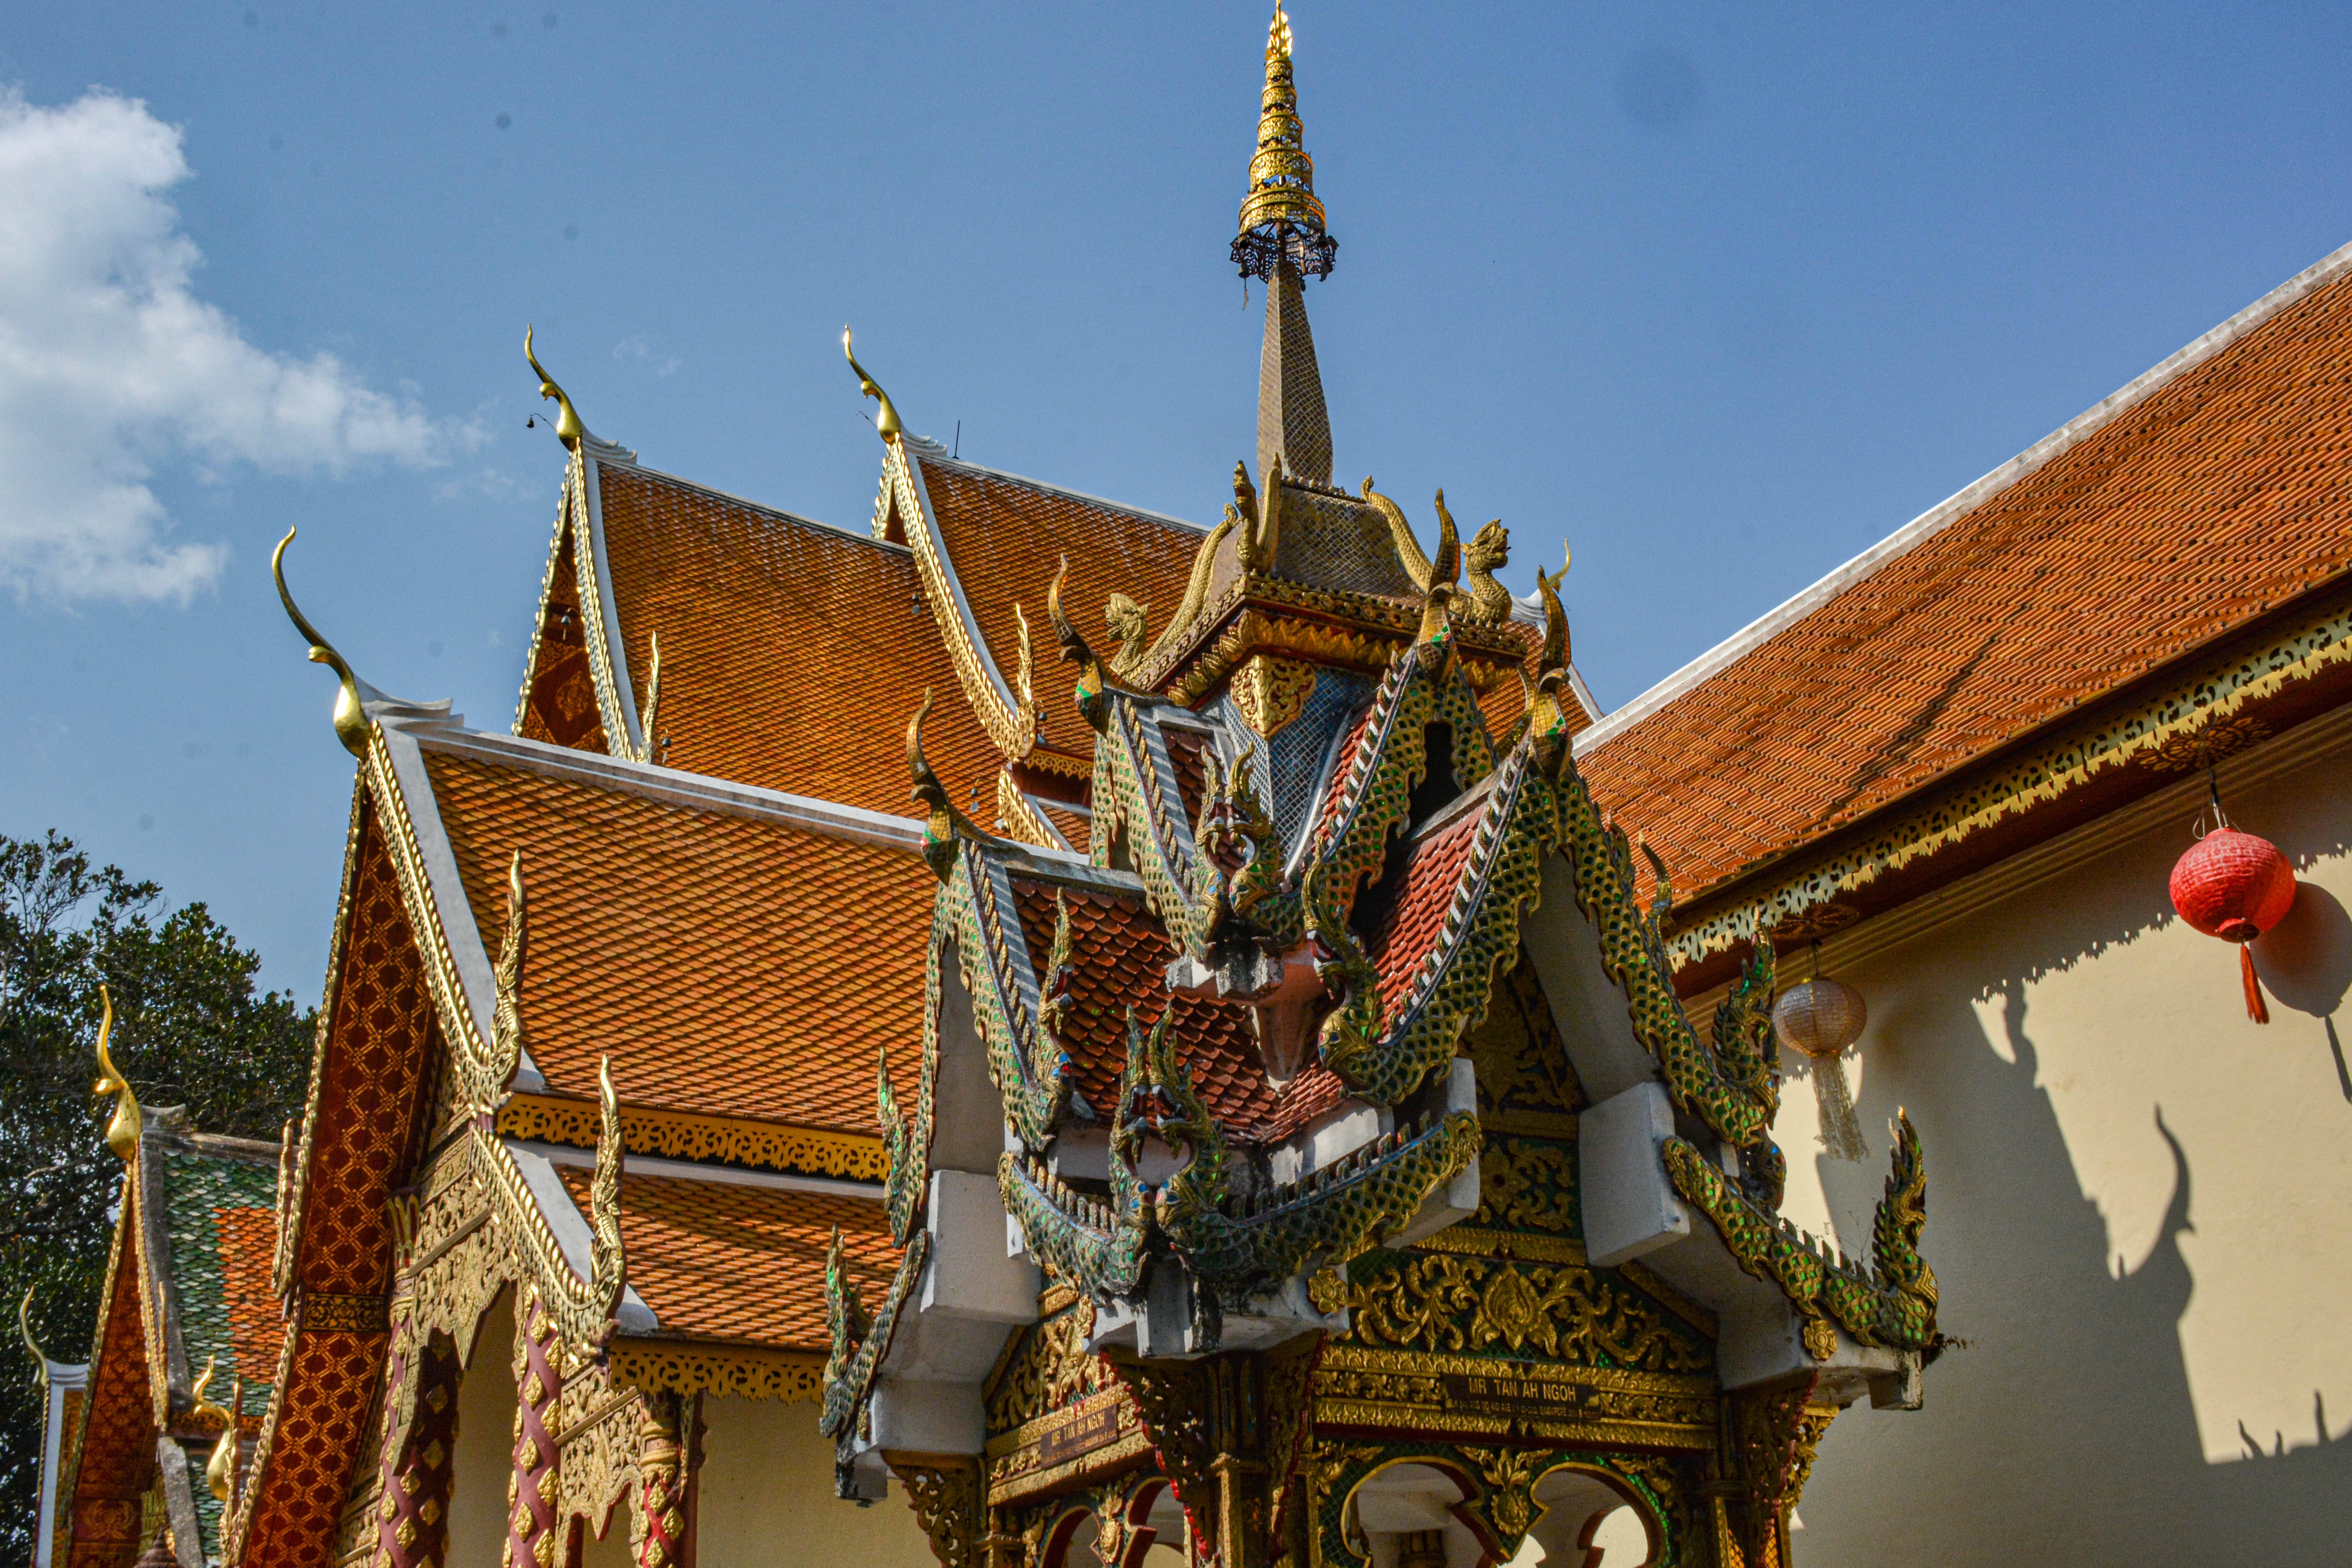 一座由大象选址的寺庙,泰国的佛教避暑圣地